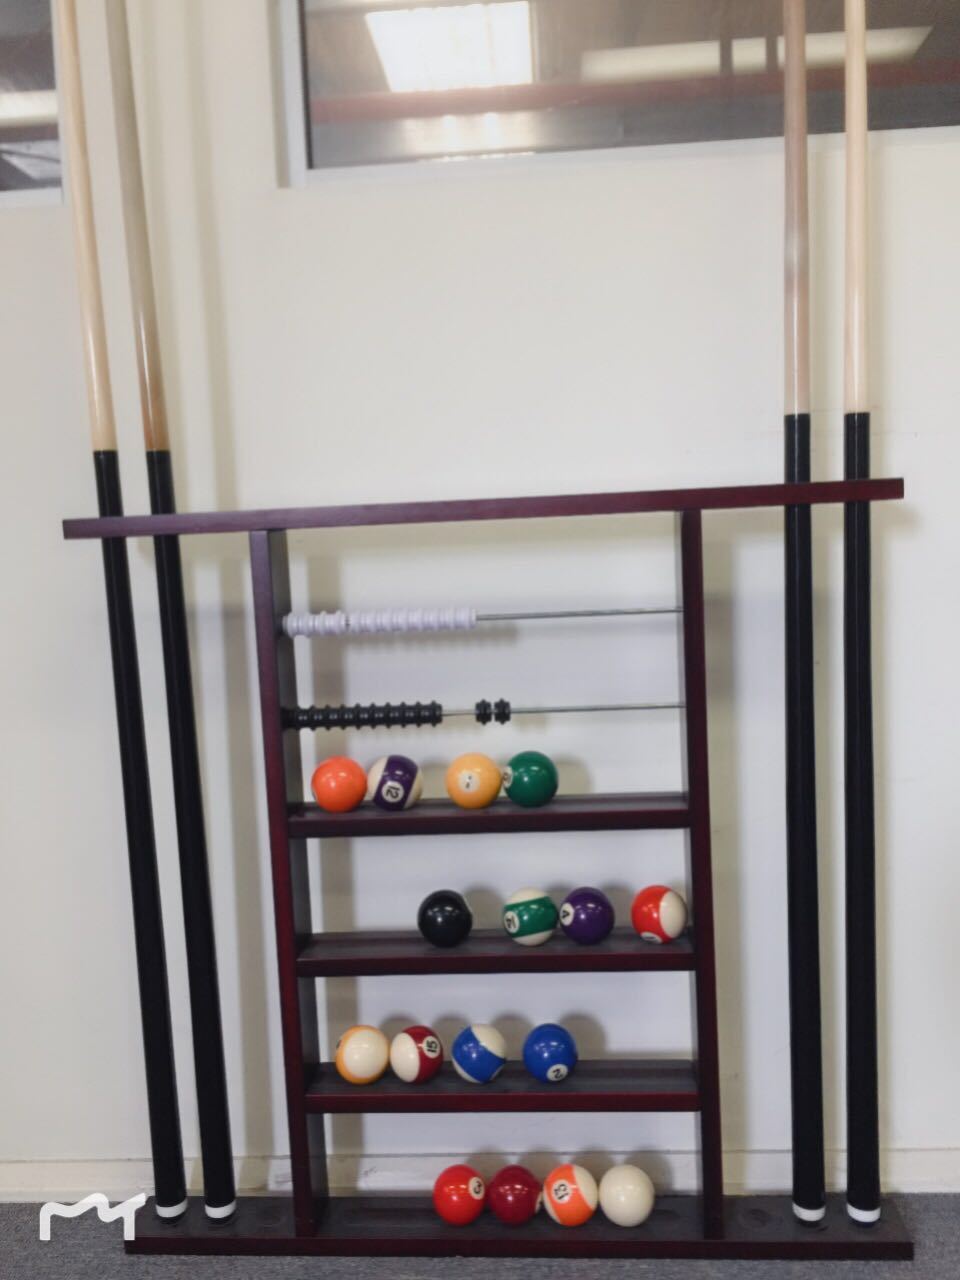 3600円 【80%OFF!】 限定価格Mantouxixi Pool Stick Holder Wall Mount Wooden Billiard Cue Rack Clip for 6 Sticks Stained Cues